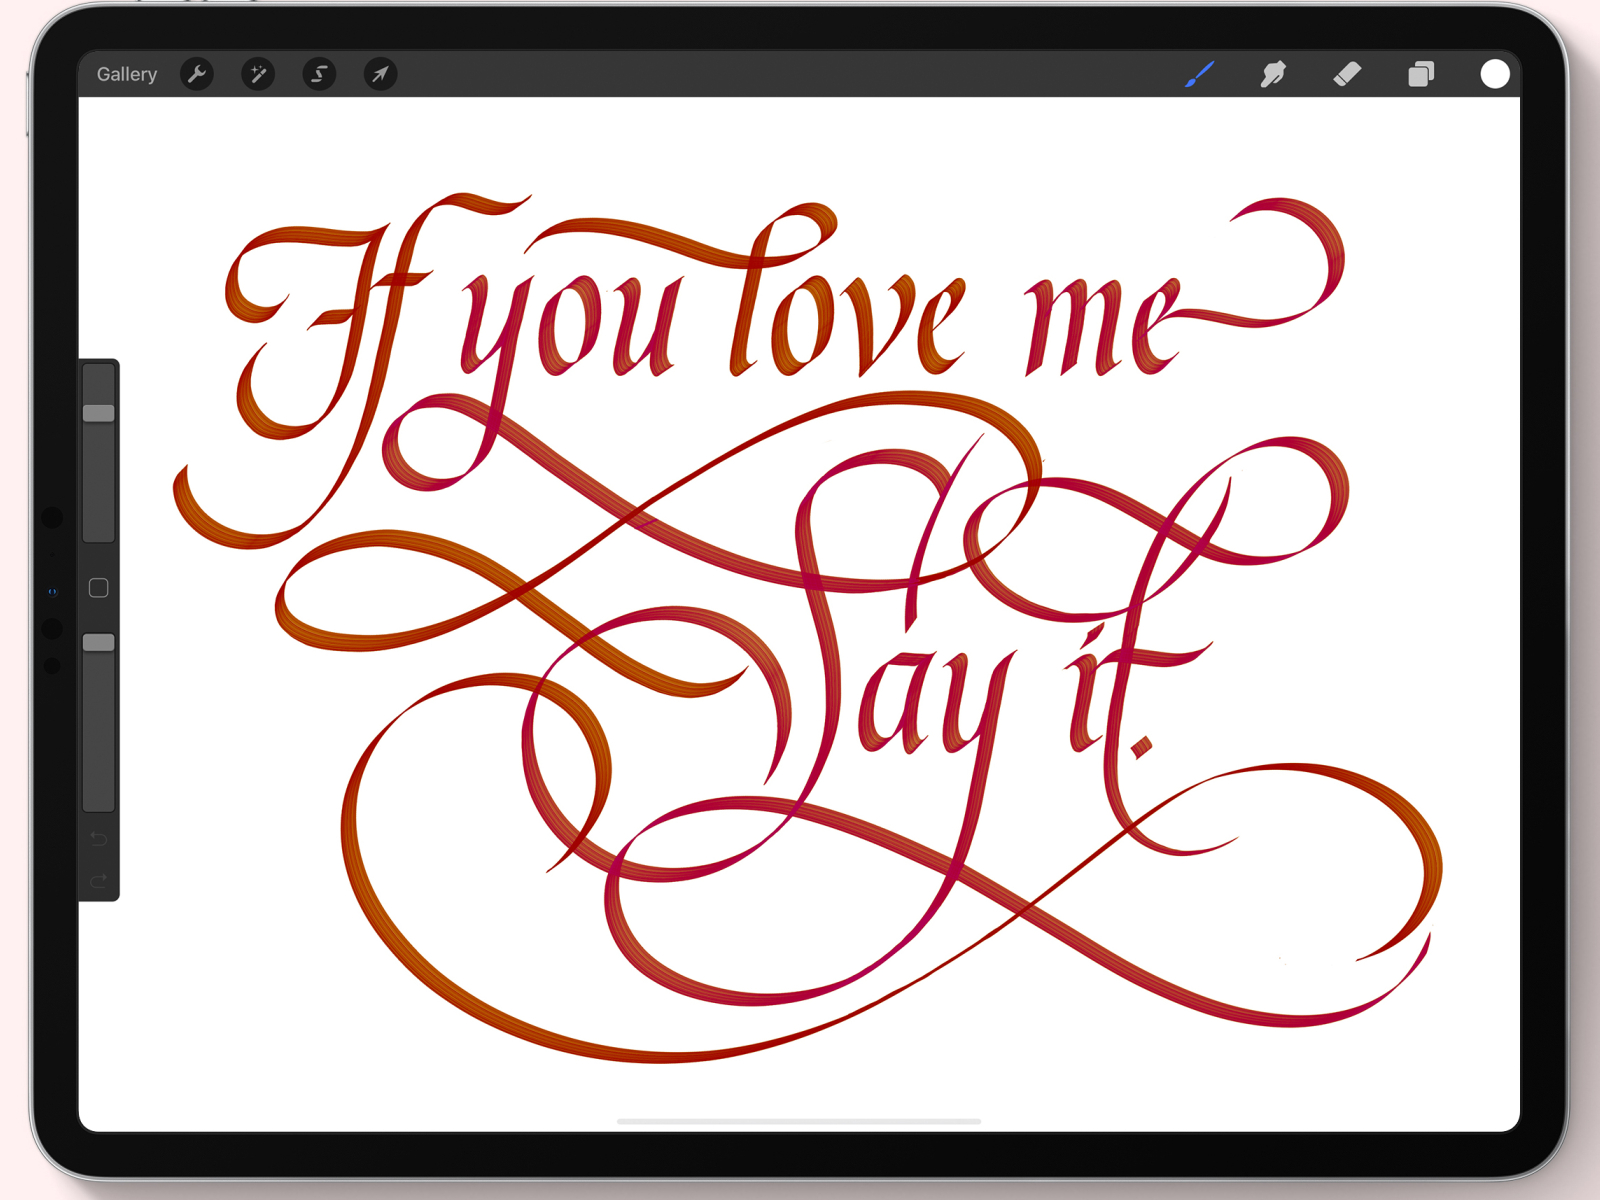 procreate app calligraphy